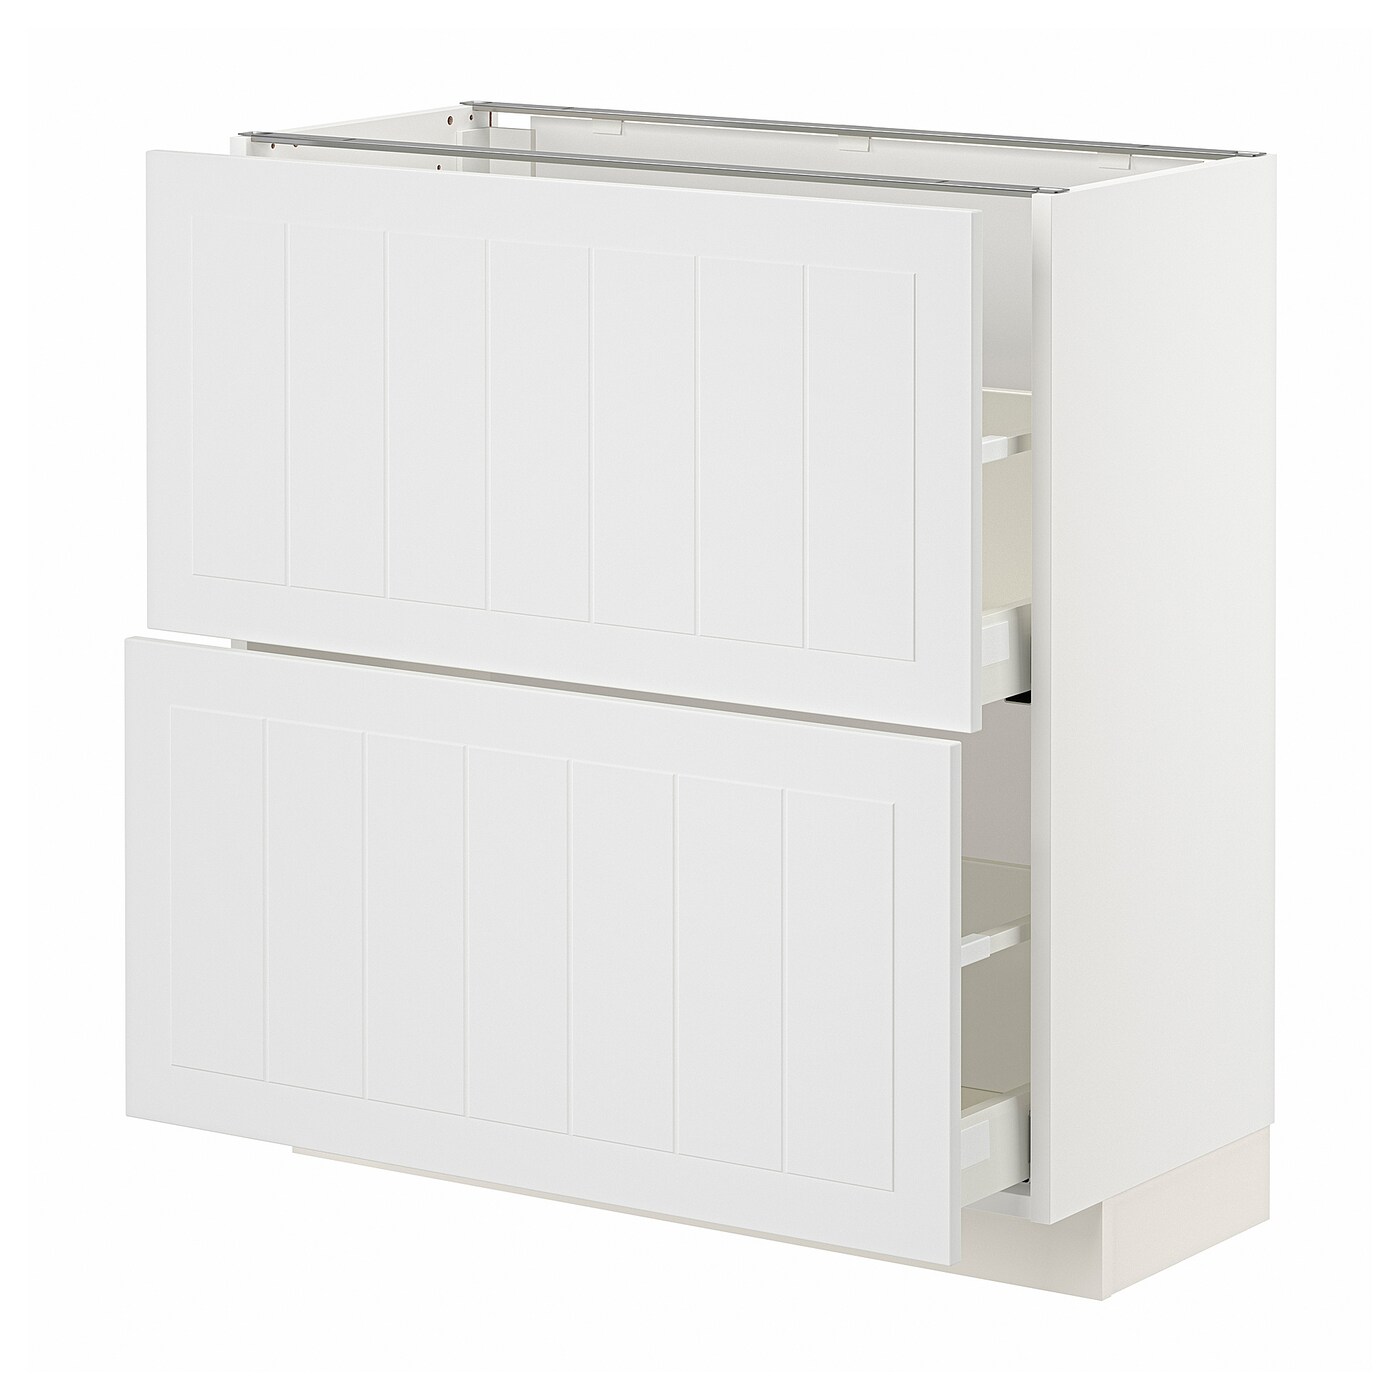 Напольный шкаф - METOD / MAXIMERA IKEA/ МЕТОД/ МАКСИМЕРА ИКЕА,   88х80 см, белый